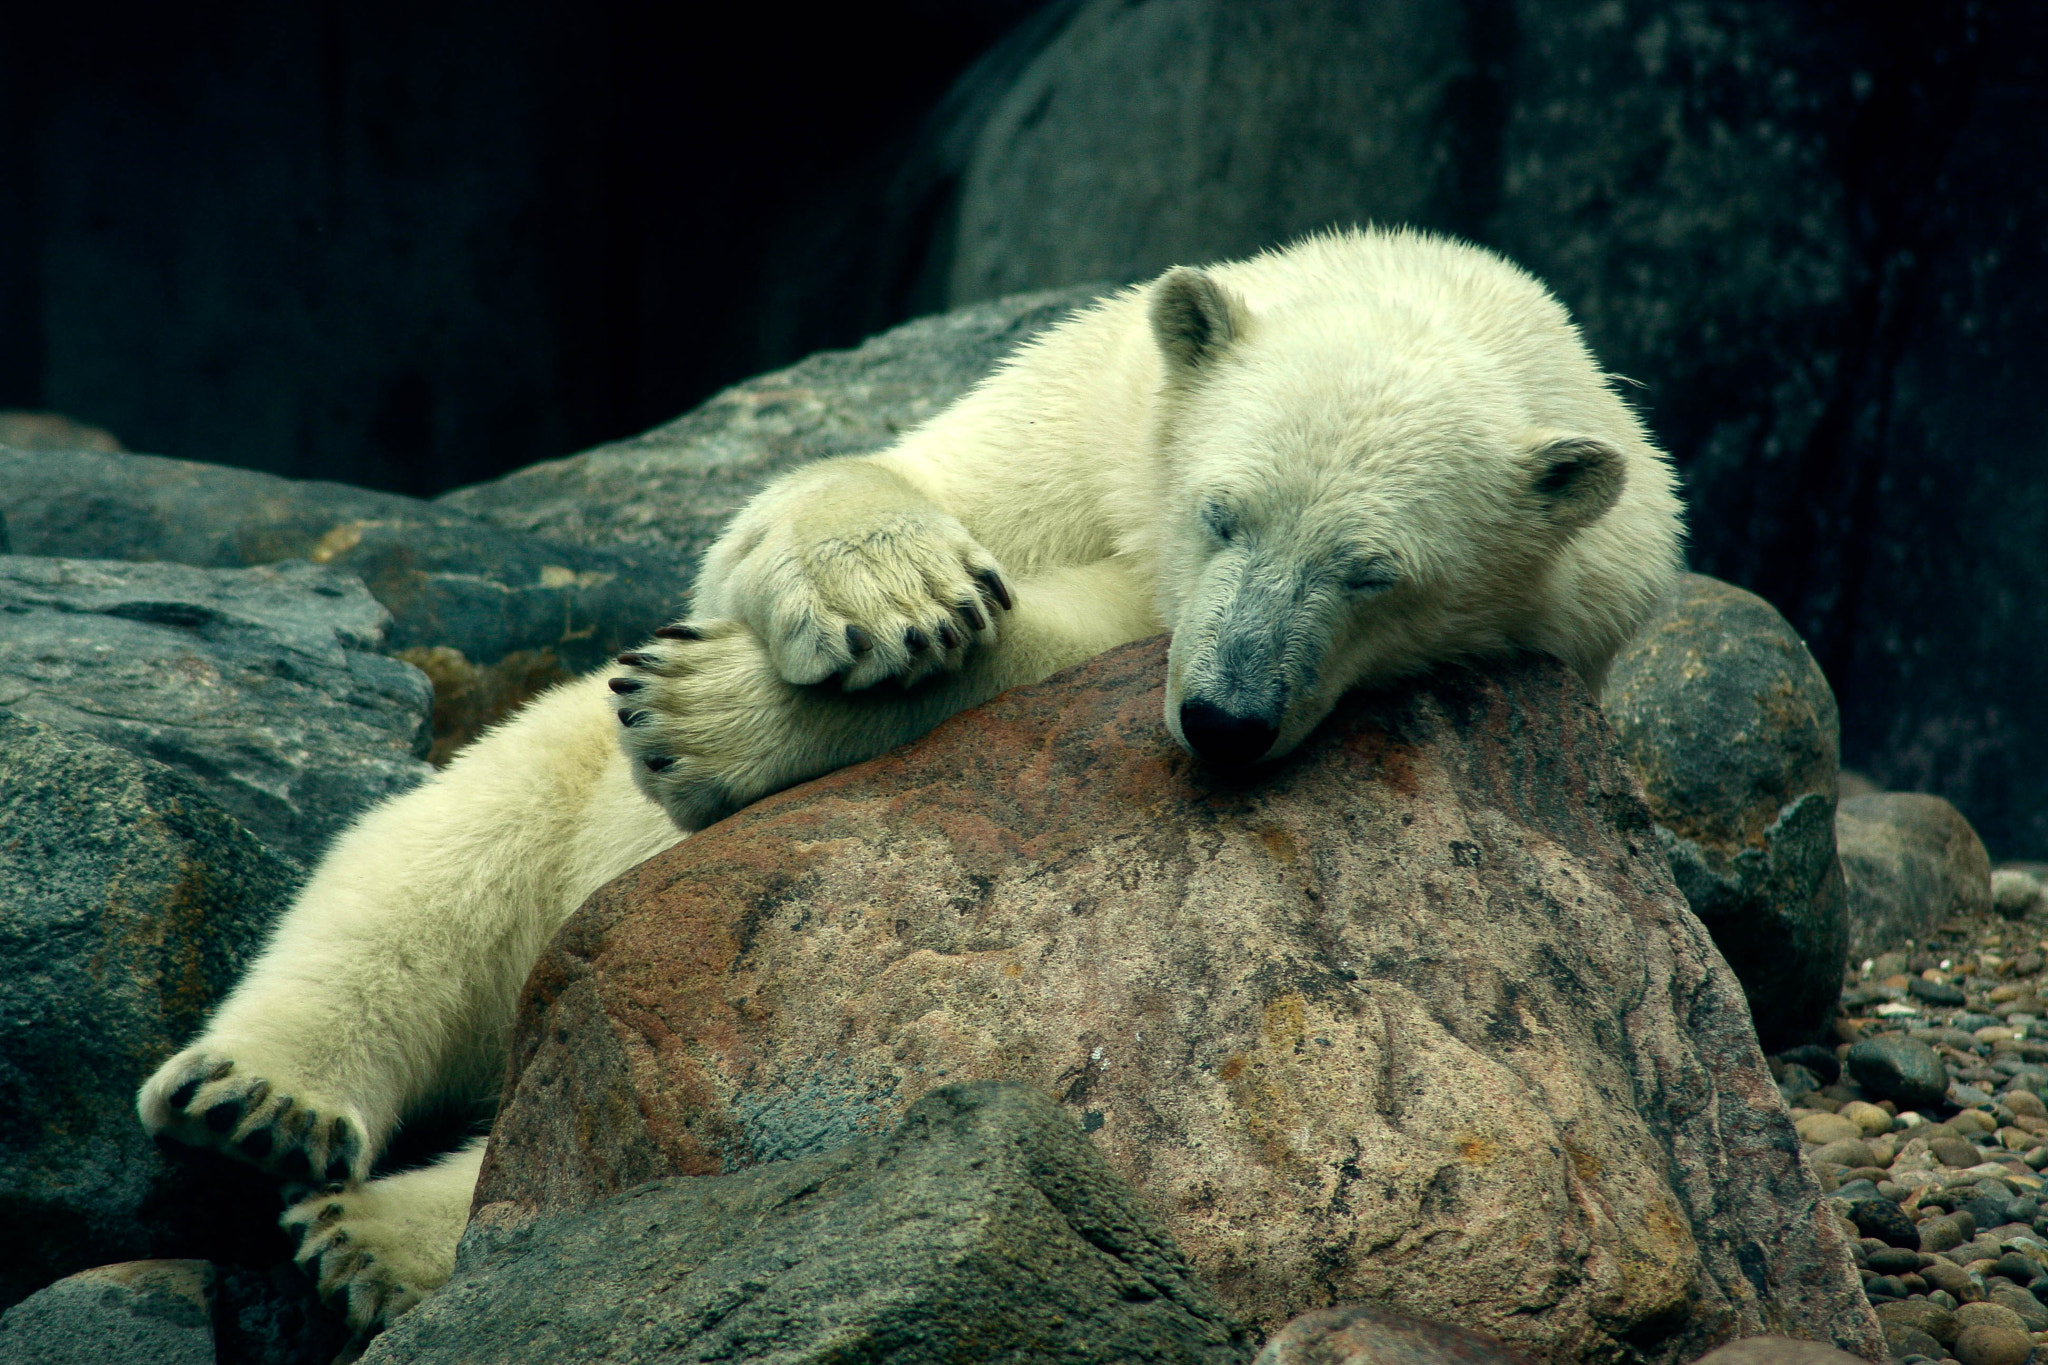 Canon EOS 40D sample photo. Polar bear nap time photography